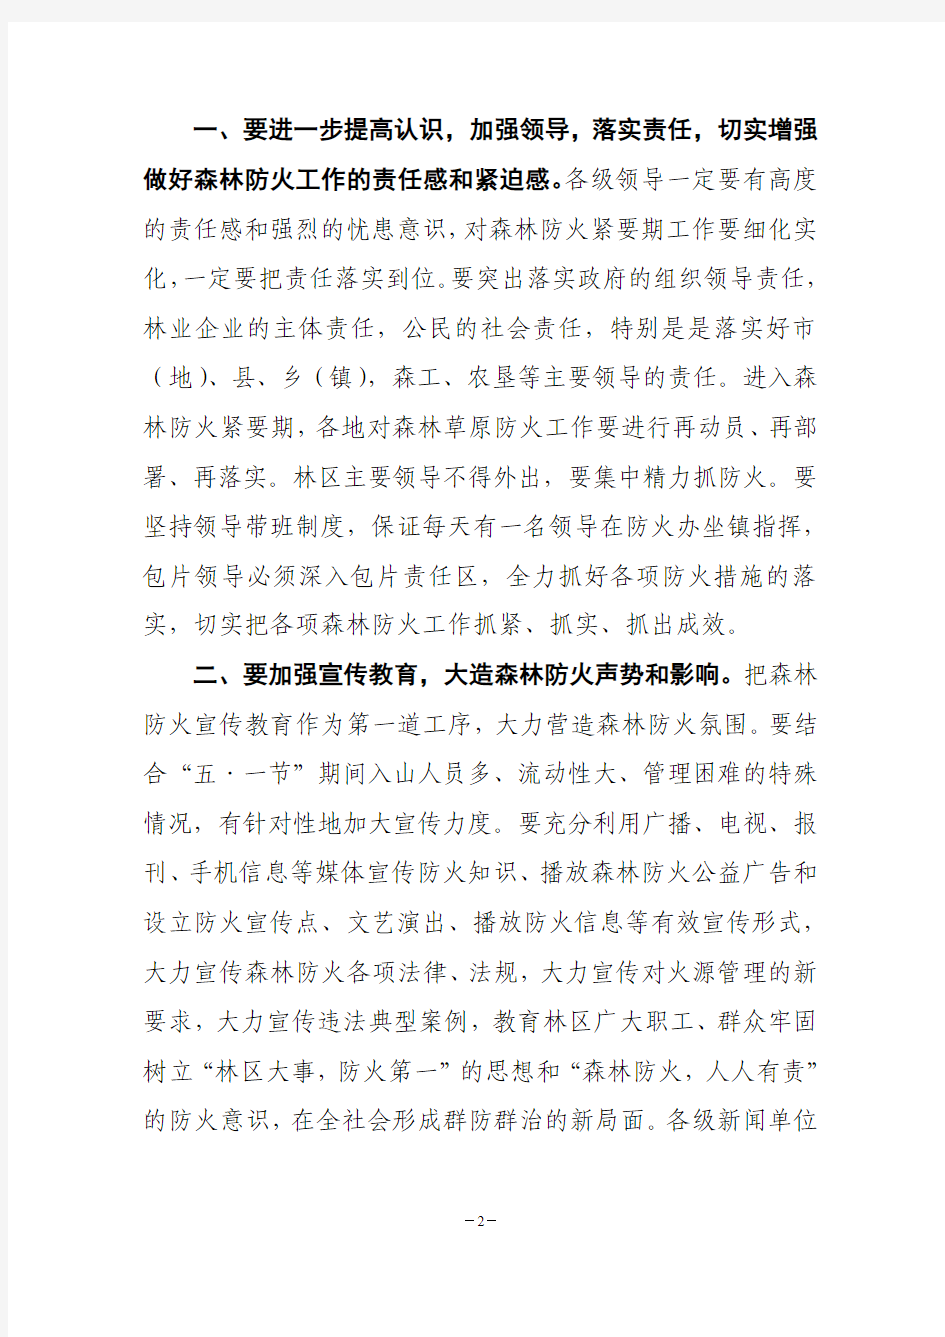 黑龙江省人民政府森林草原防火指挥部工作的通知